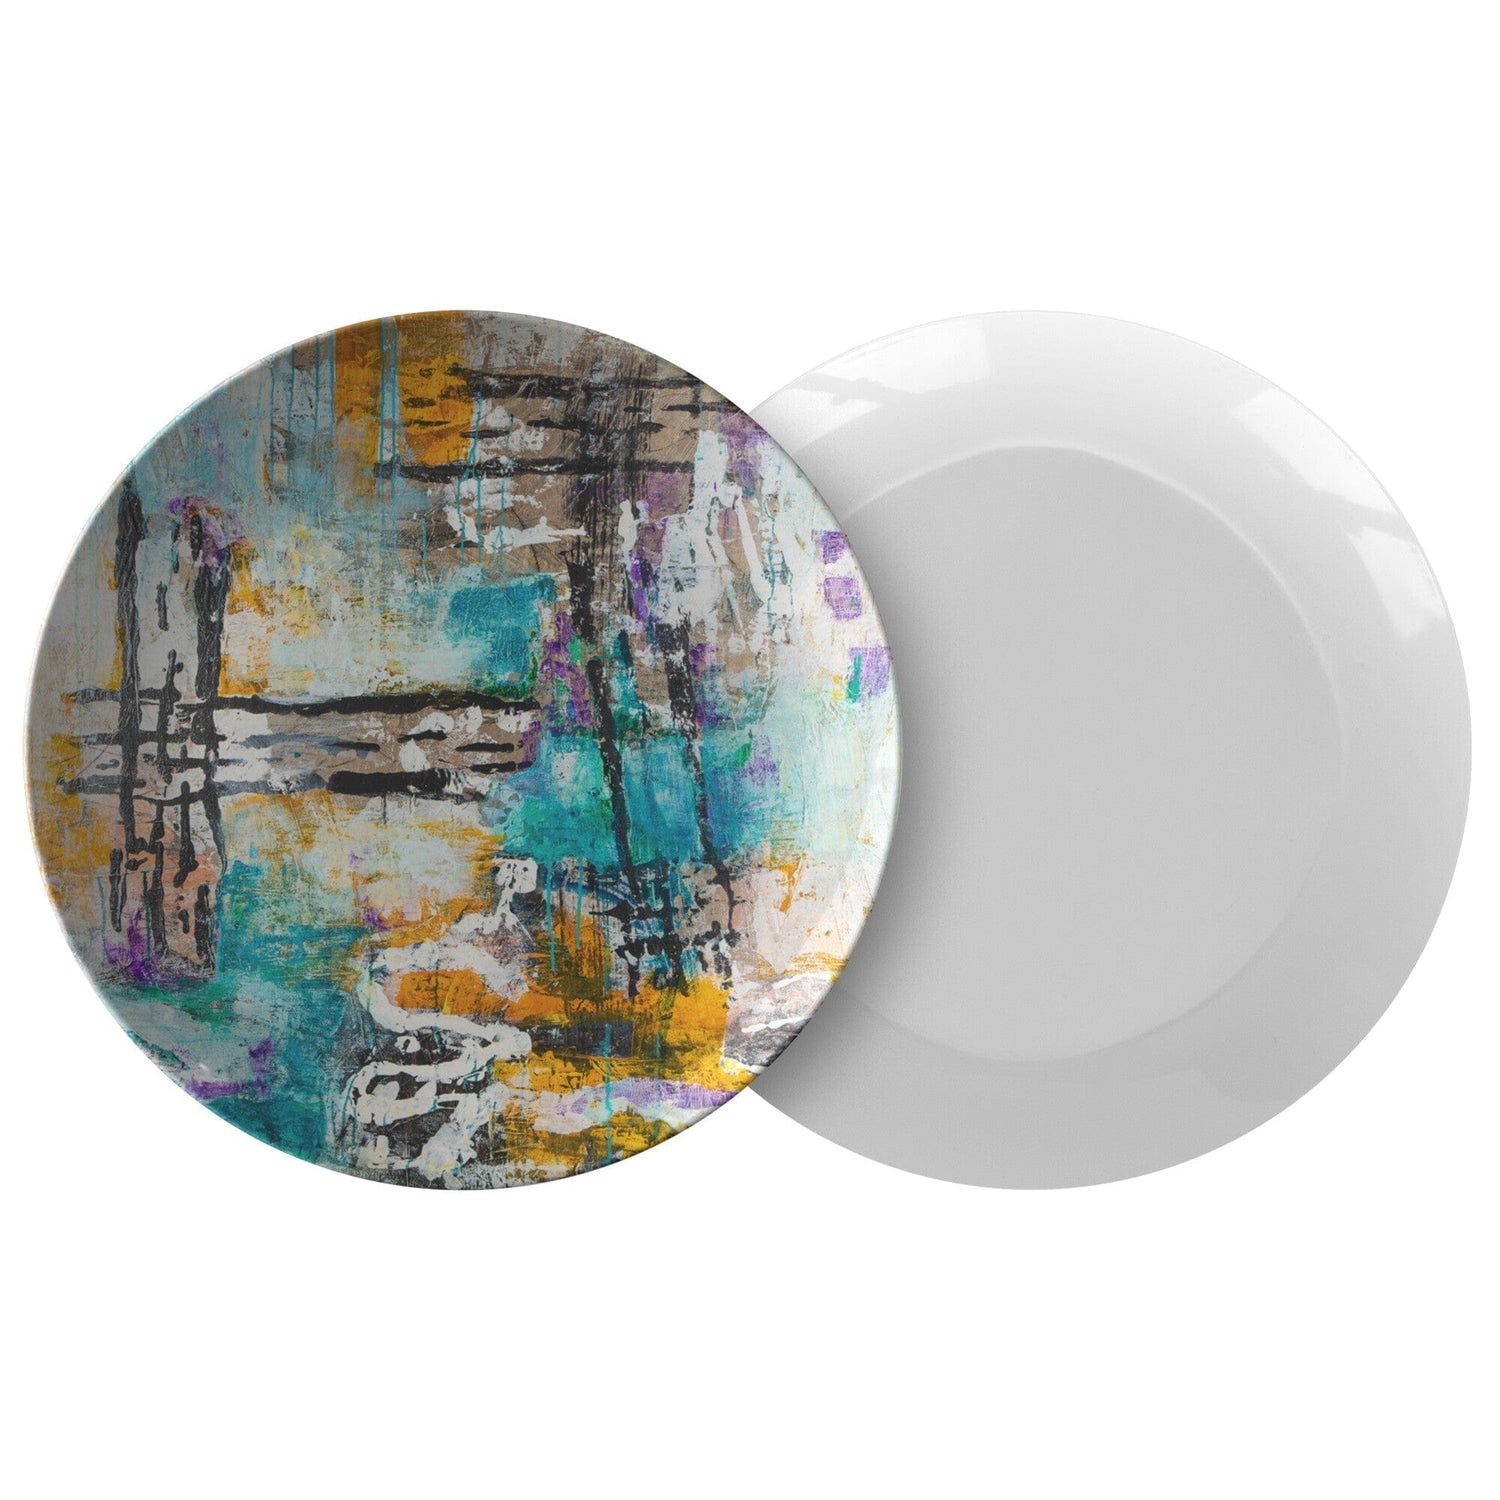 Kate McEnroe New York Dinner Plates in Modern Abstract ArtPlates9820SINGLE